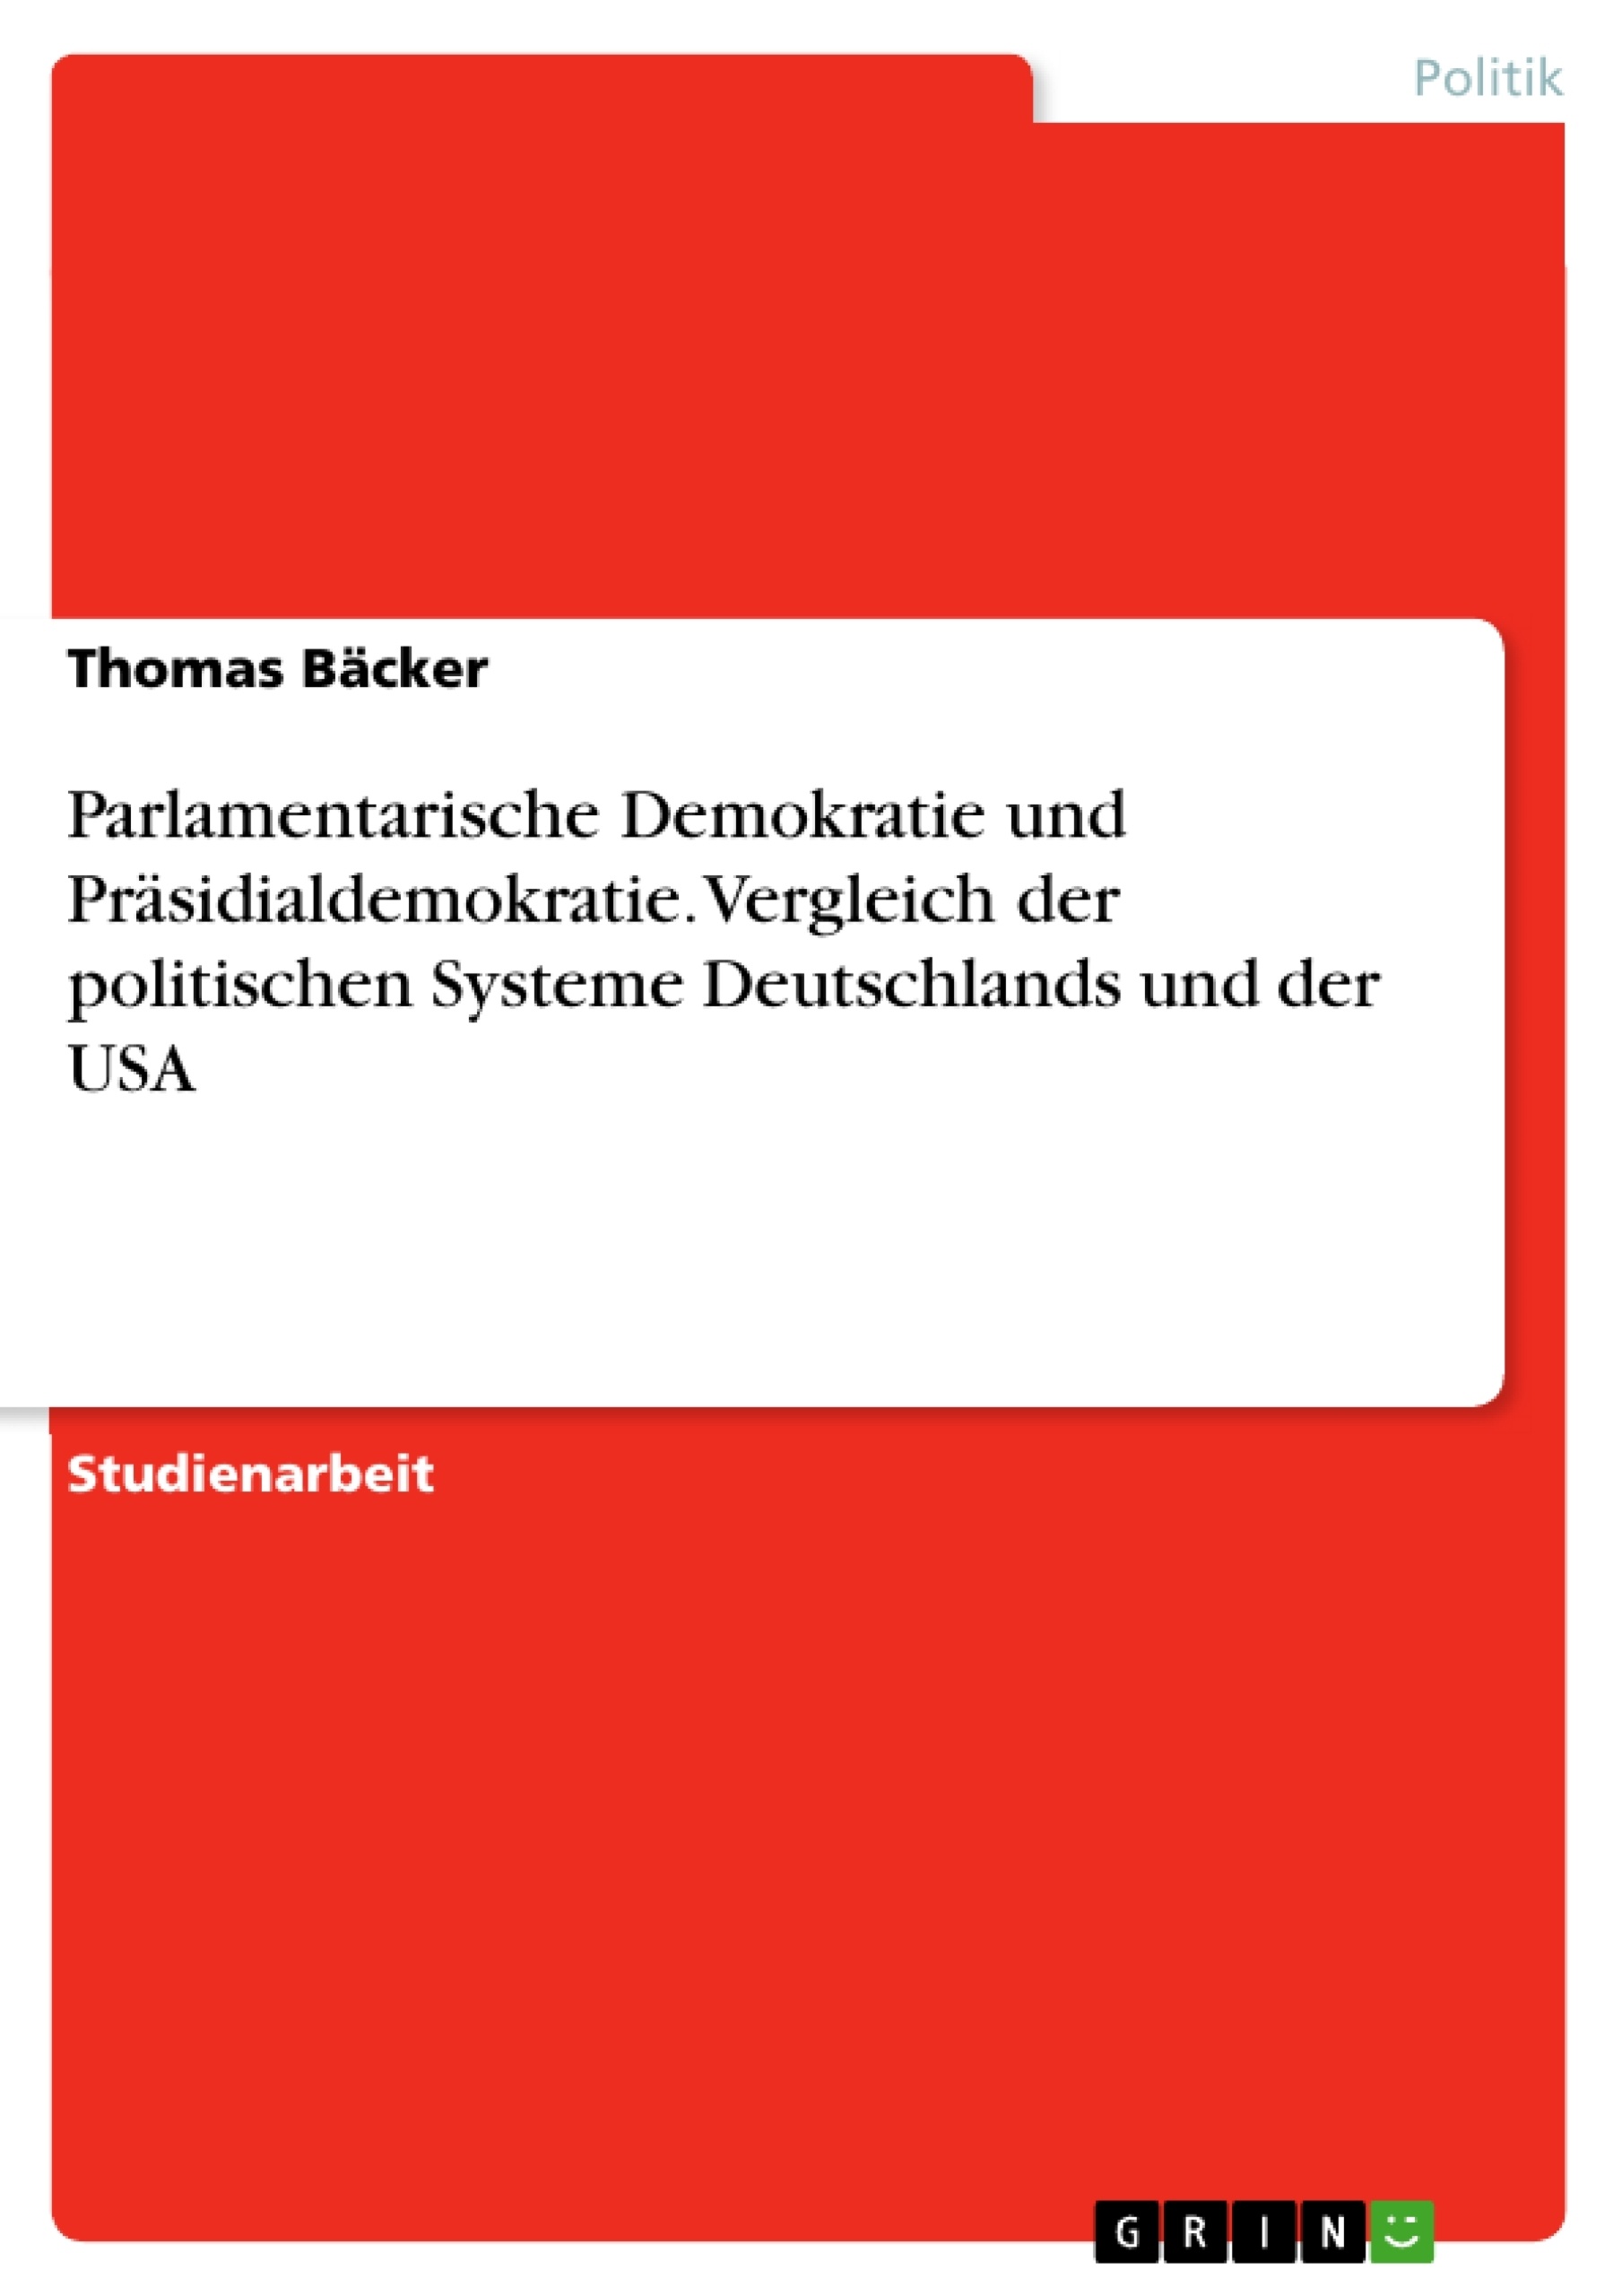 Title: Parlamentarische Demokratie und Präsidialdemokratie. Vergleich der politischen Systeme Deutschlands und der USA